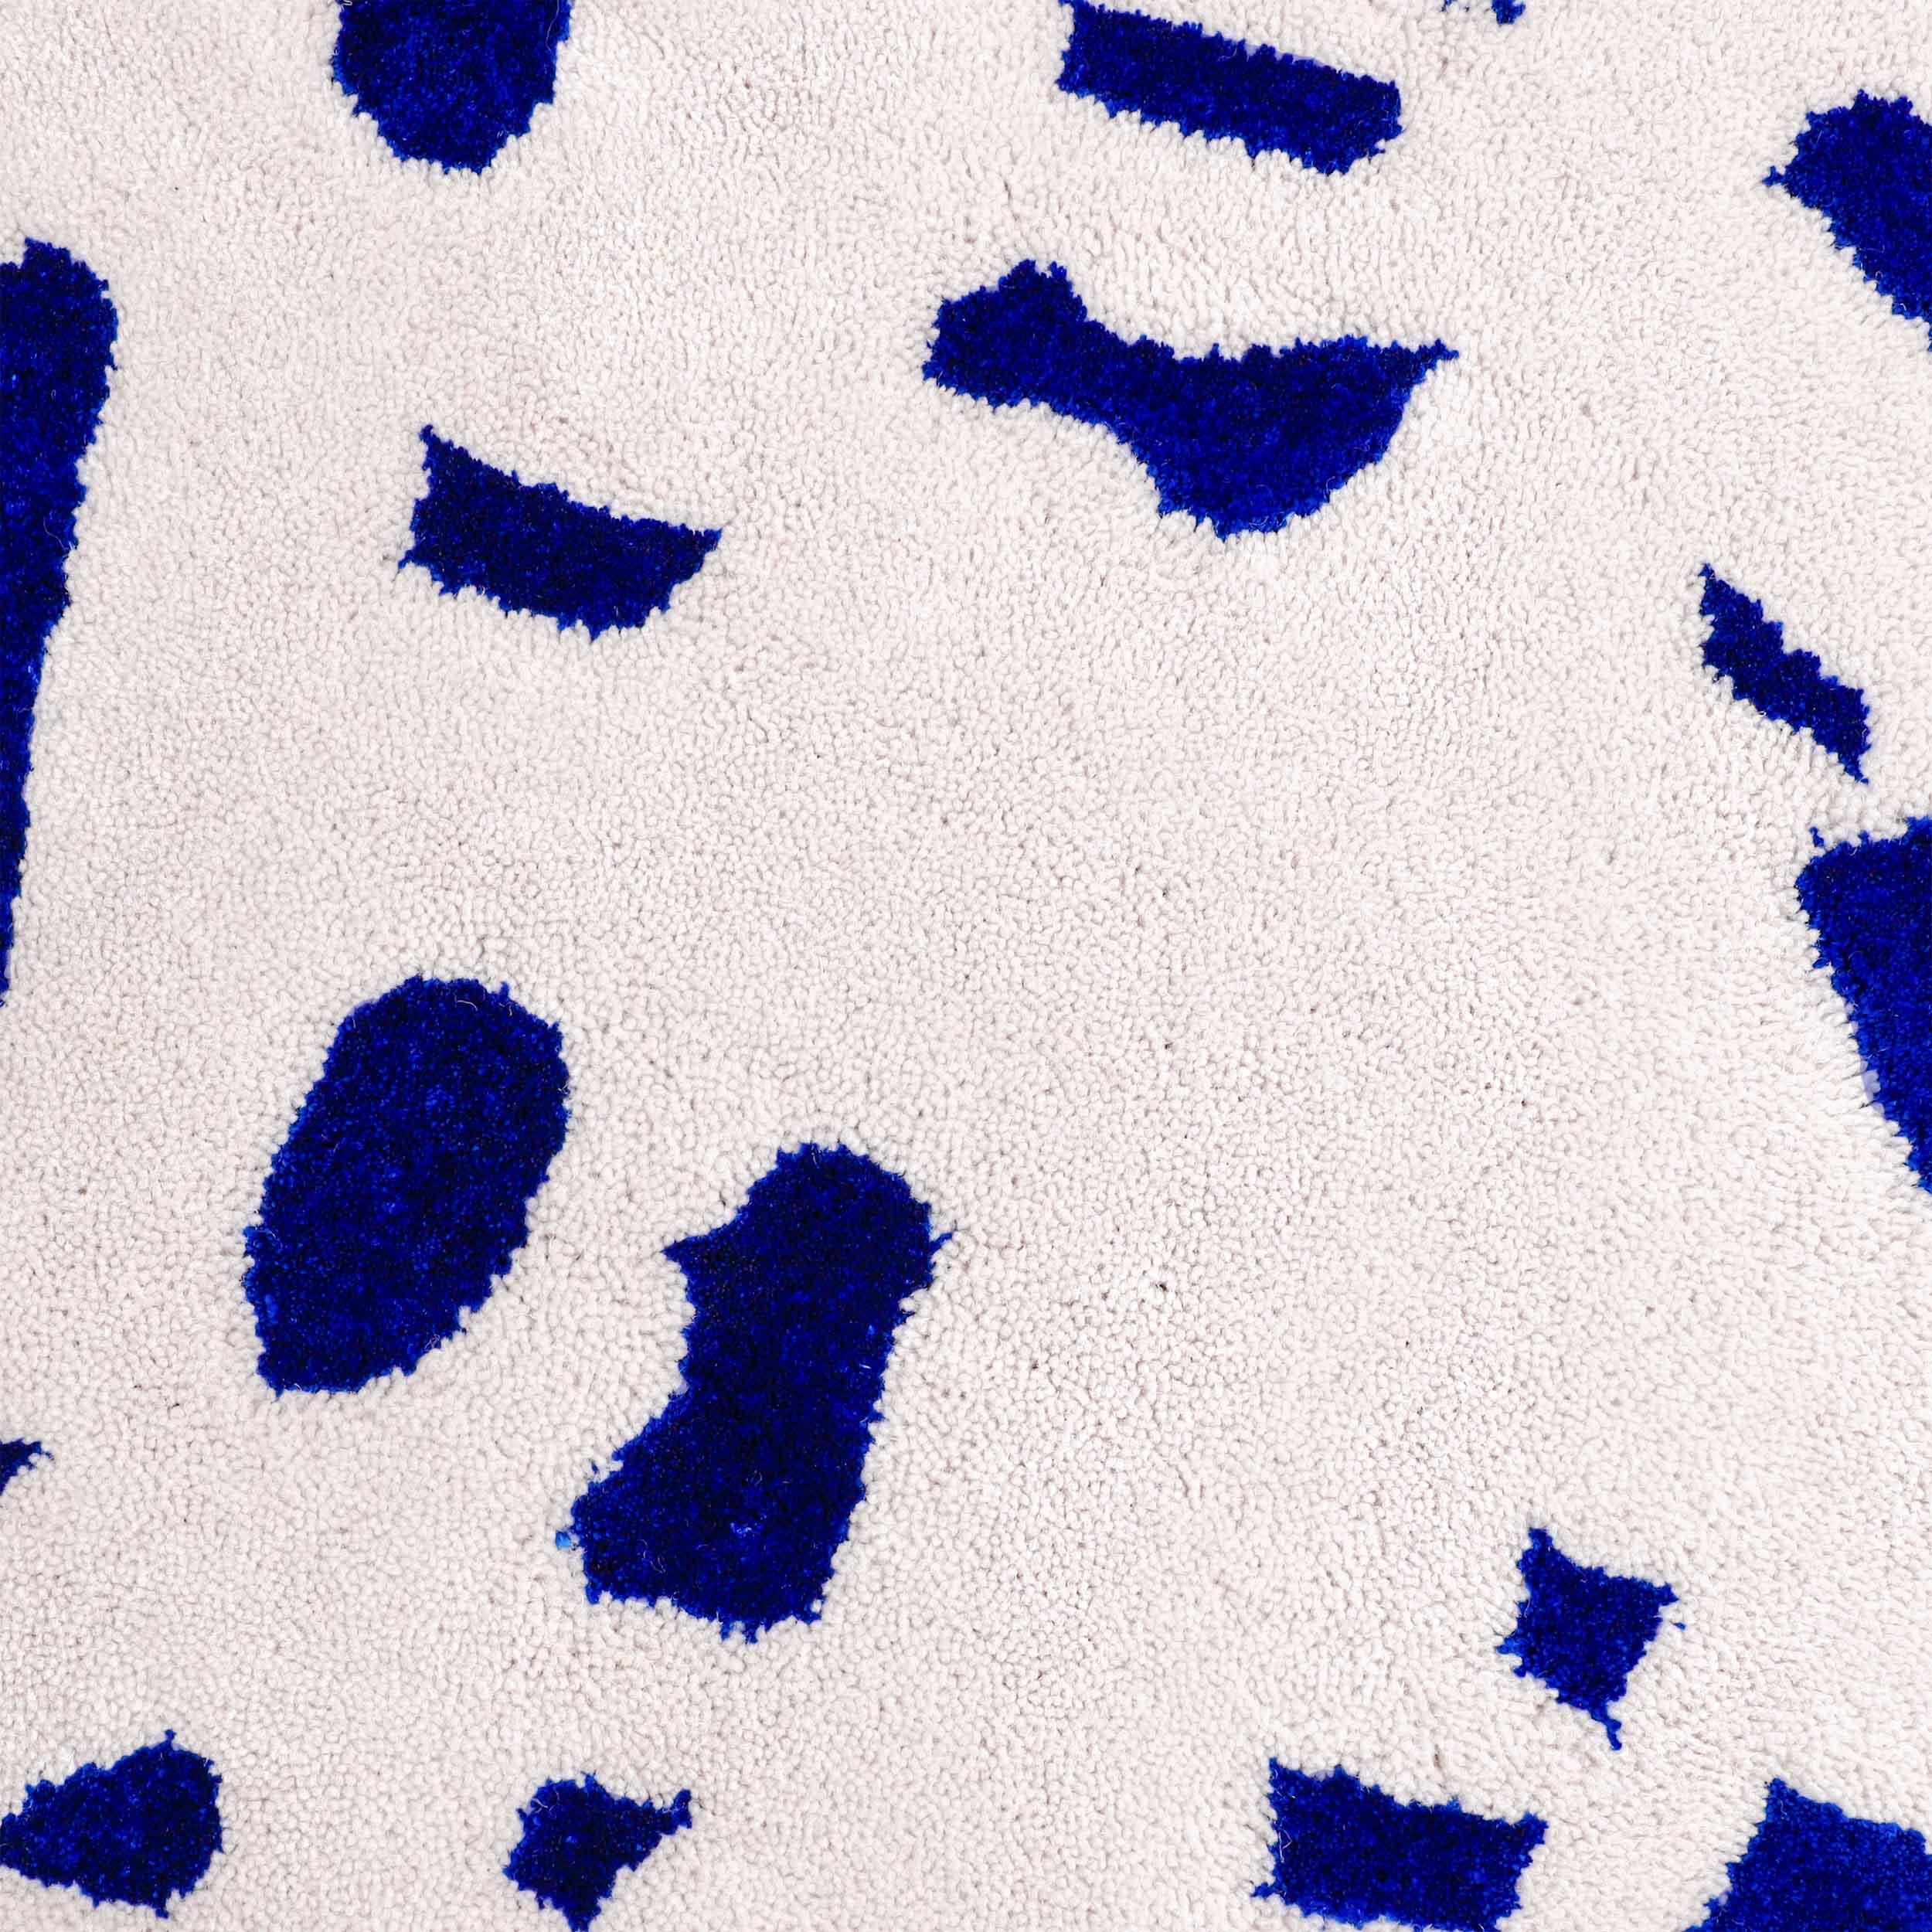 Le motif Speckled squiggle se compose d'une surface en laine résistante avec un motif de mouchetures en viscose bleue brillante.

Taille : 7 x 10 ft 
MATERIAL : Laine + viscose
Couleur : Blanc cassé/gris clair + Bleu électrique*
Fabriqué en